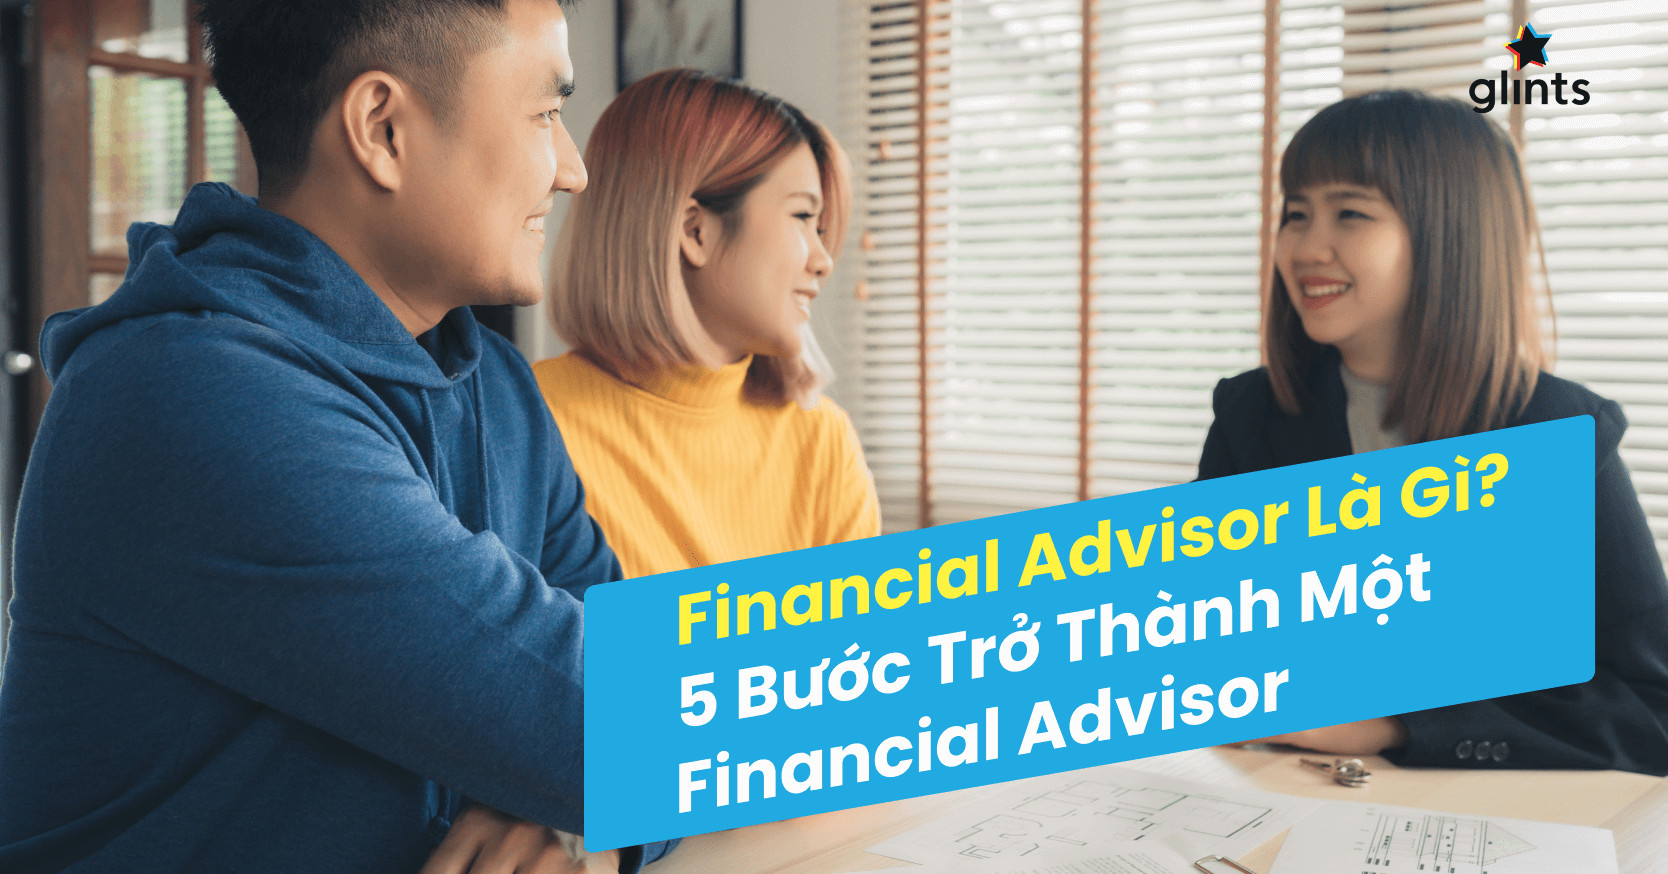 financial advisor là gì